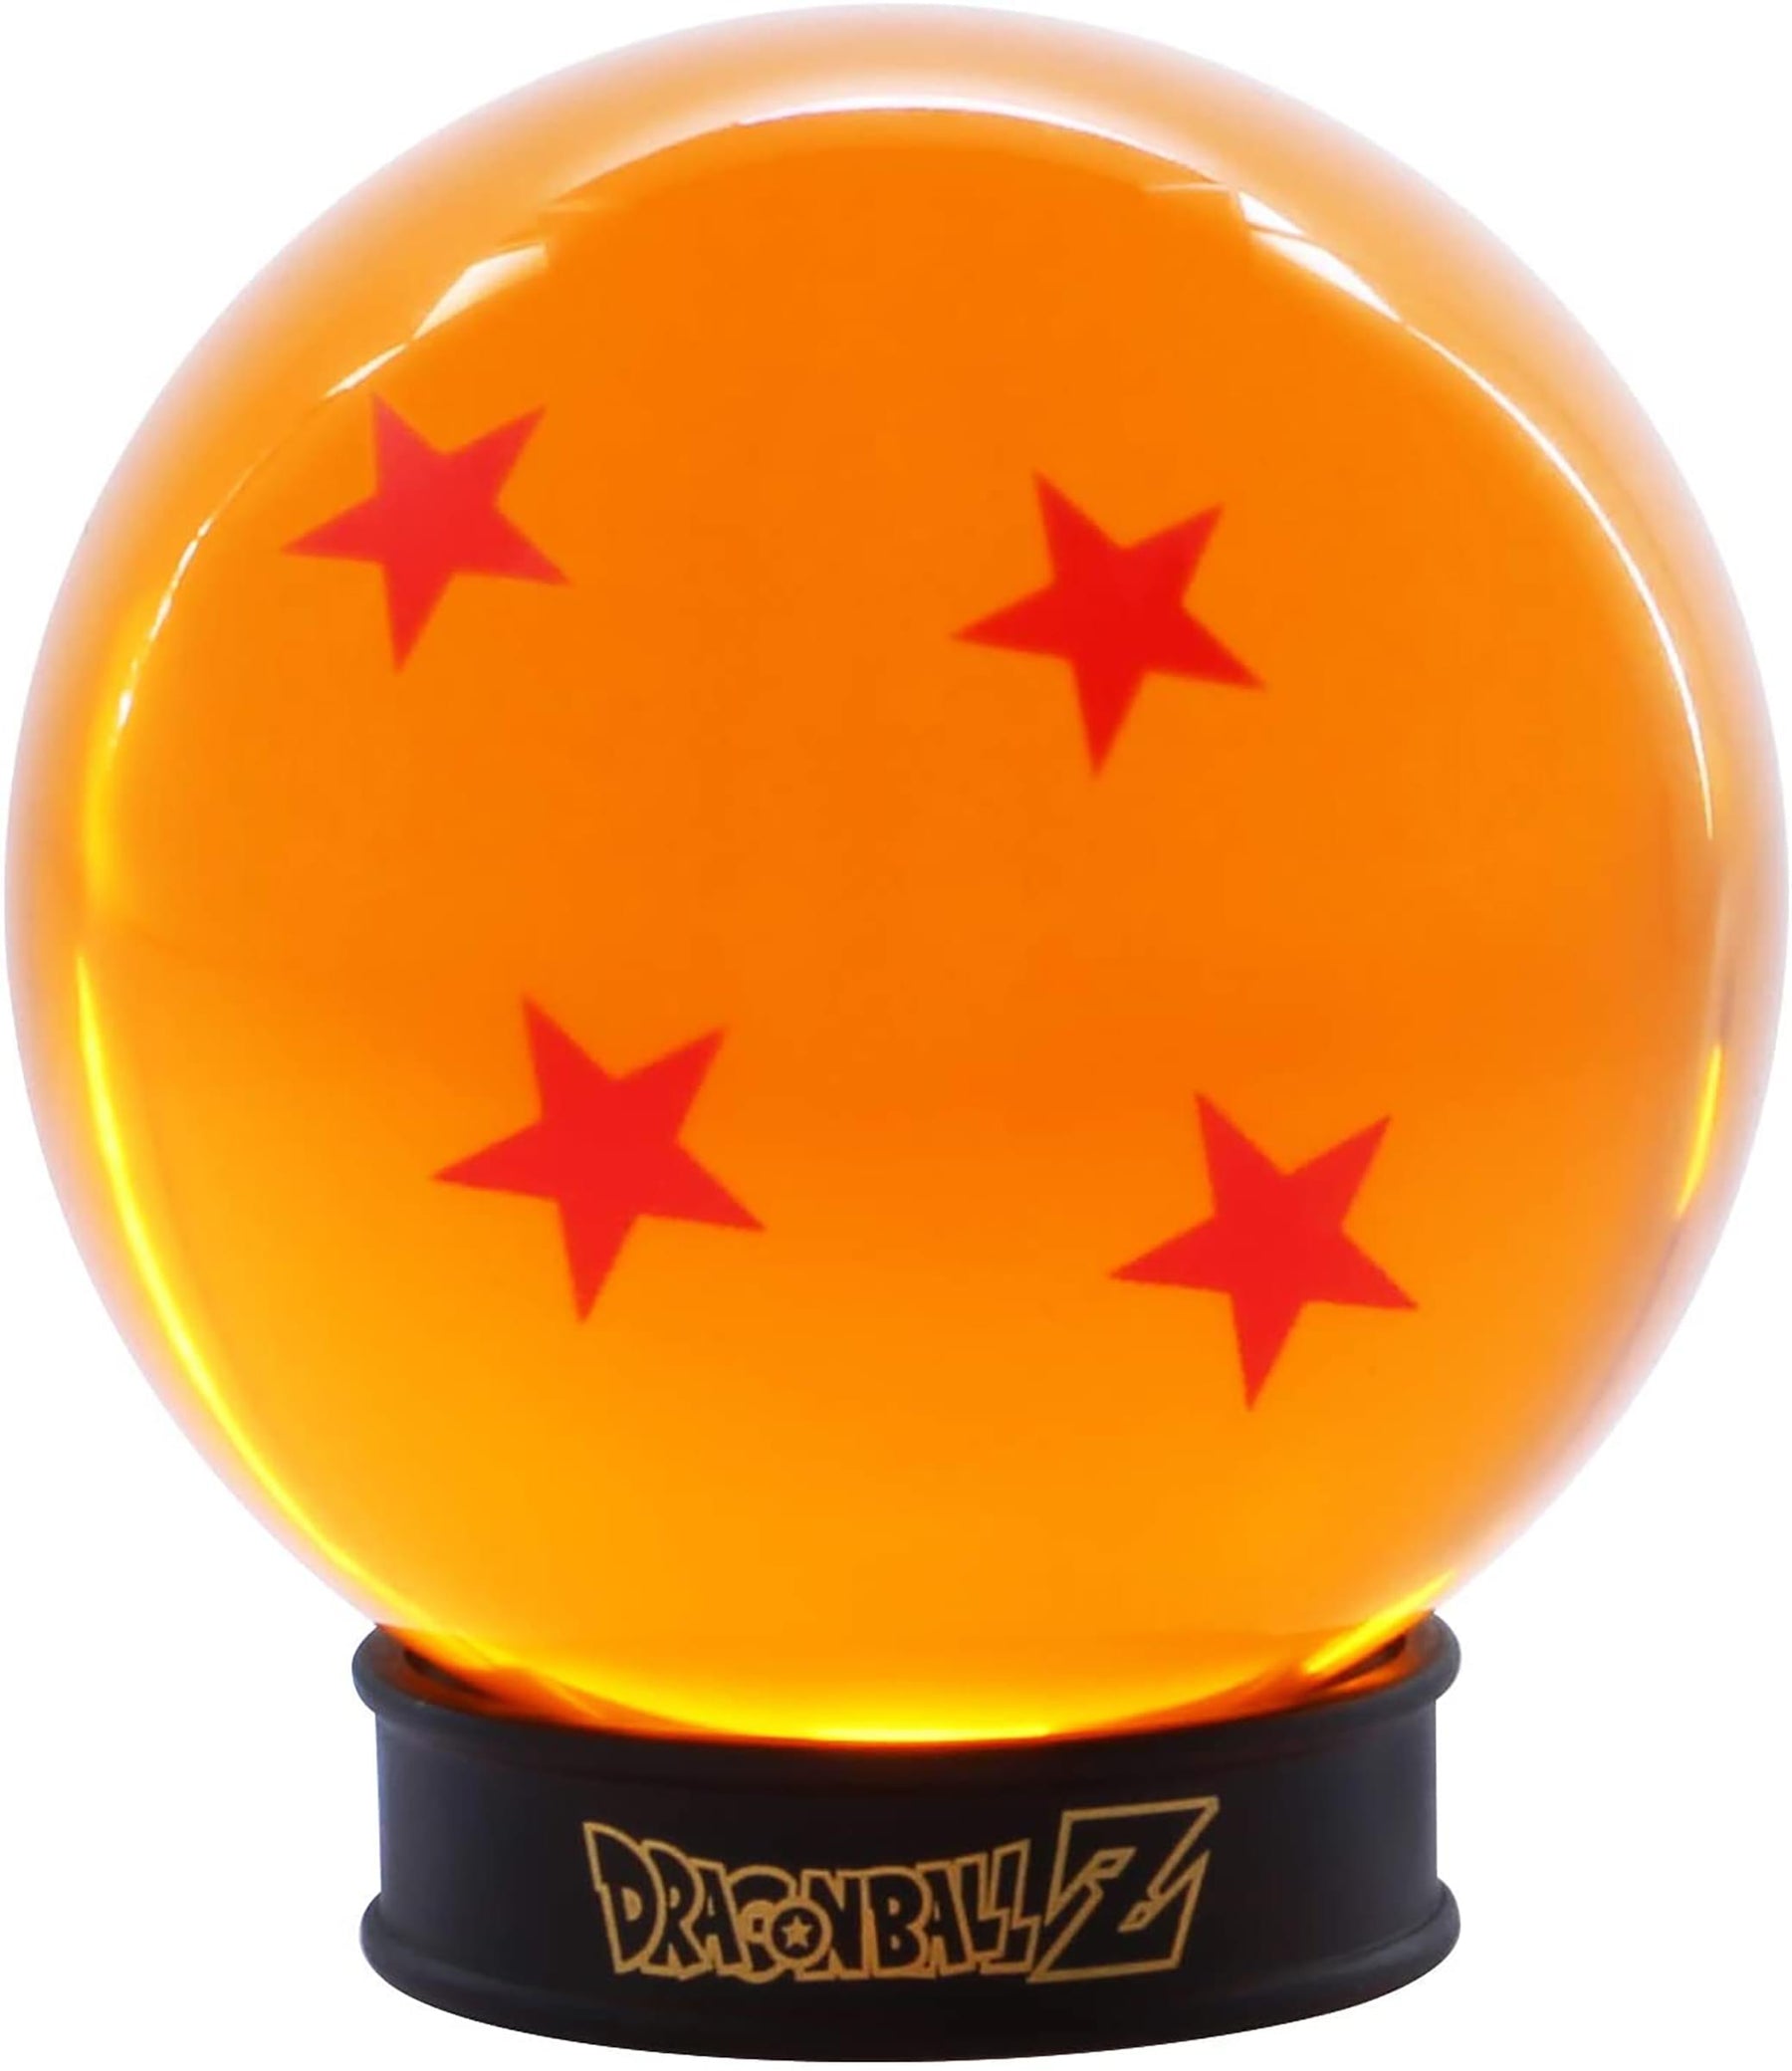 Dragon Ball Z 4 Star Dragon Ball Replica With Display Base